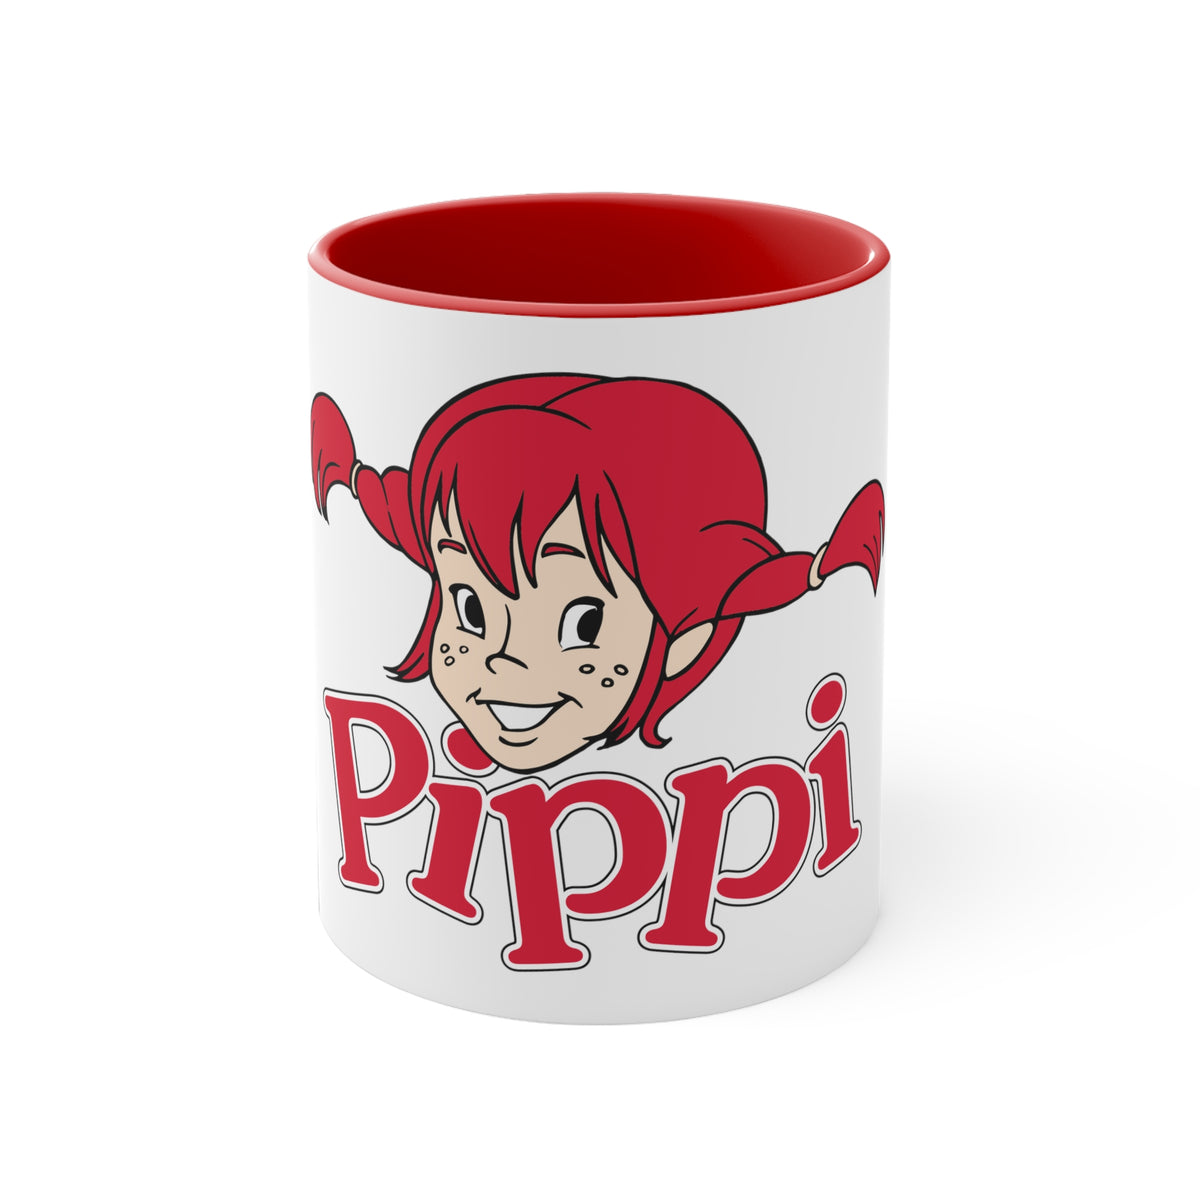 Pippi Longstocking Coffee Mug, 11oz